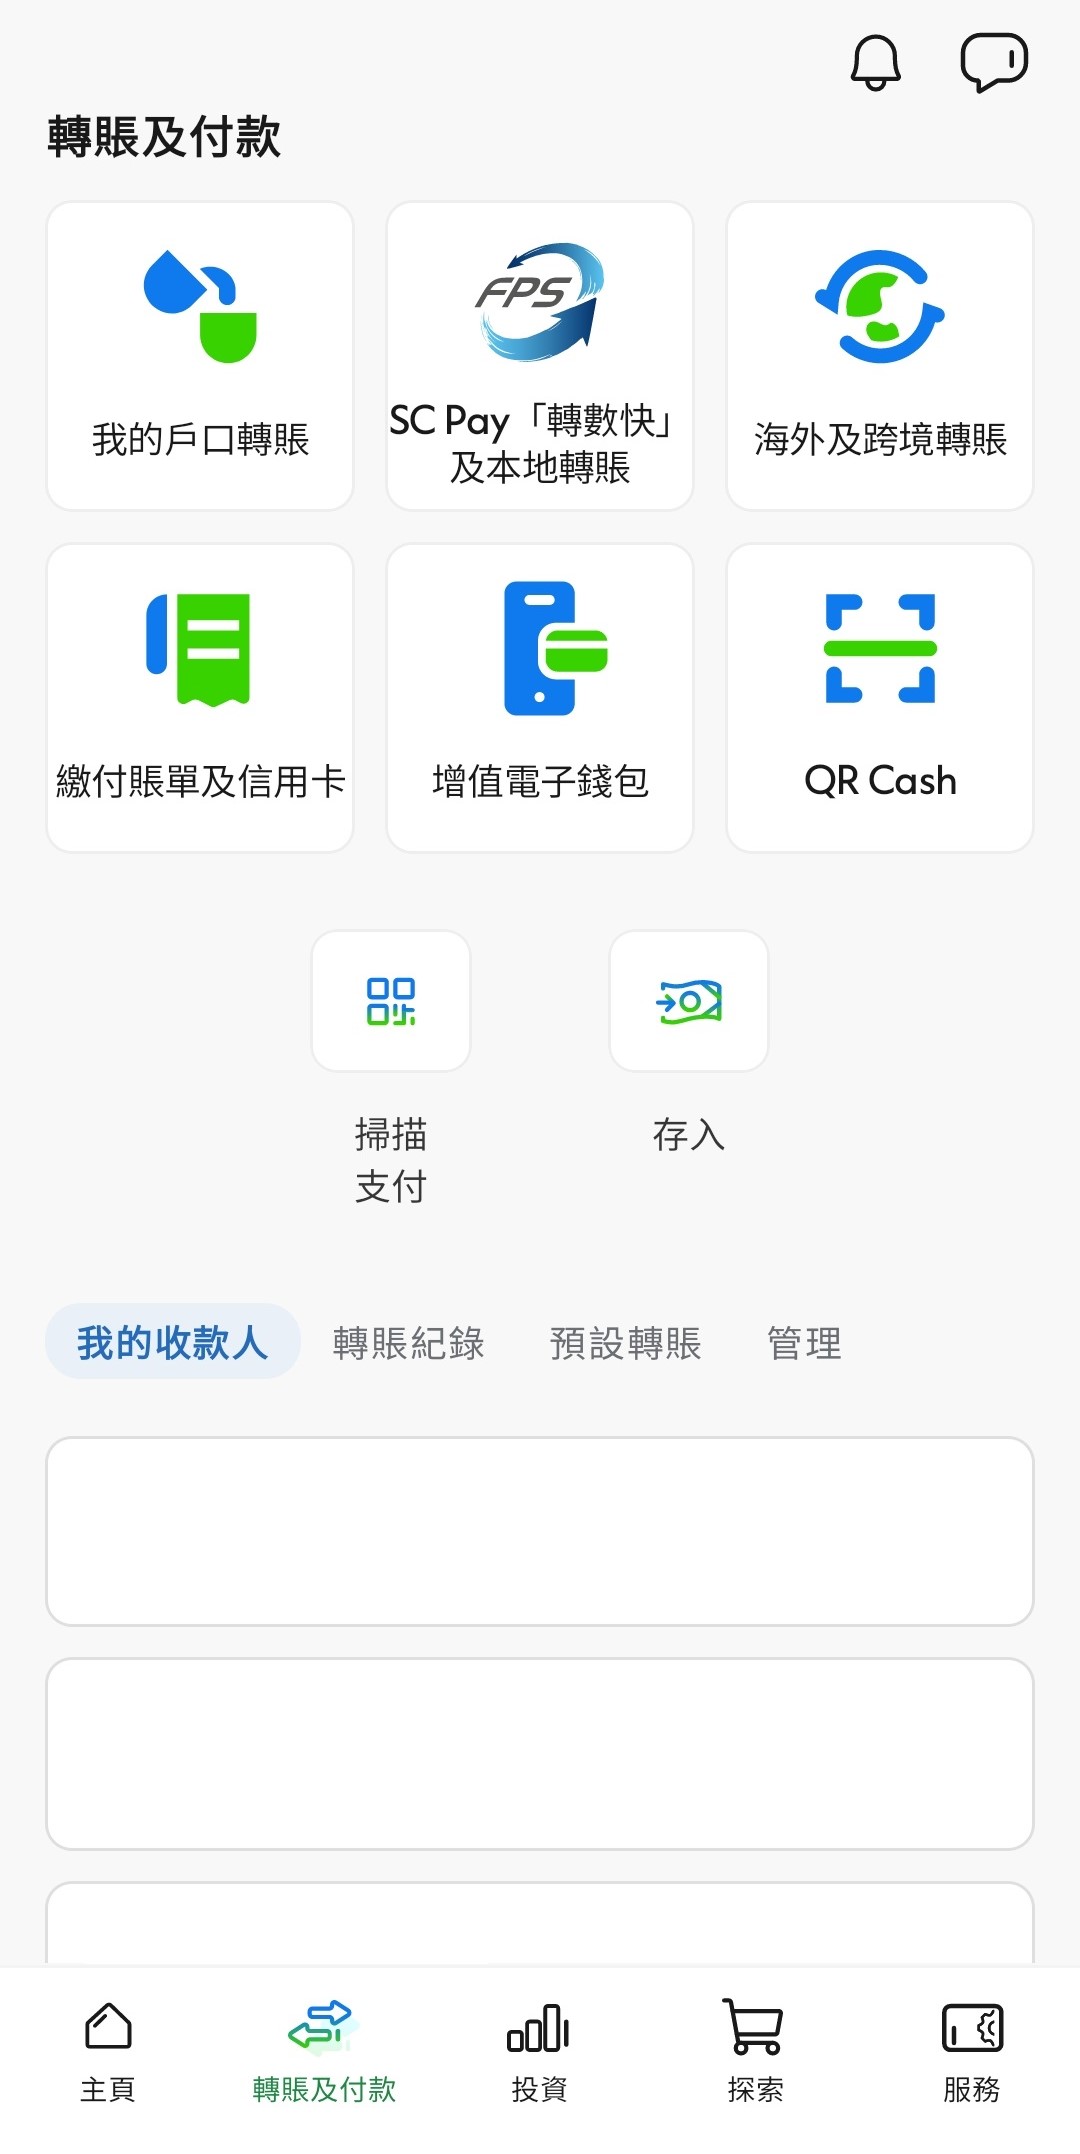 以您的香港流動電話號碼於WeChat Pay HK登記「轉數快」｡ 登入SC Mobile App後，前往「轉賬及付款」然後選擇「 SC Pay (轉數快) 」